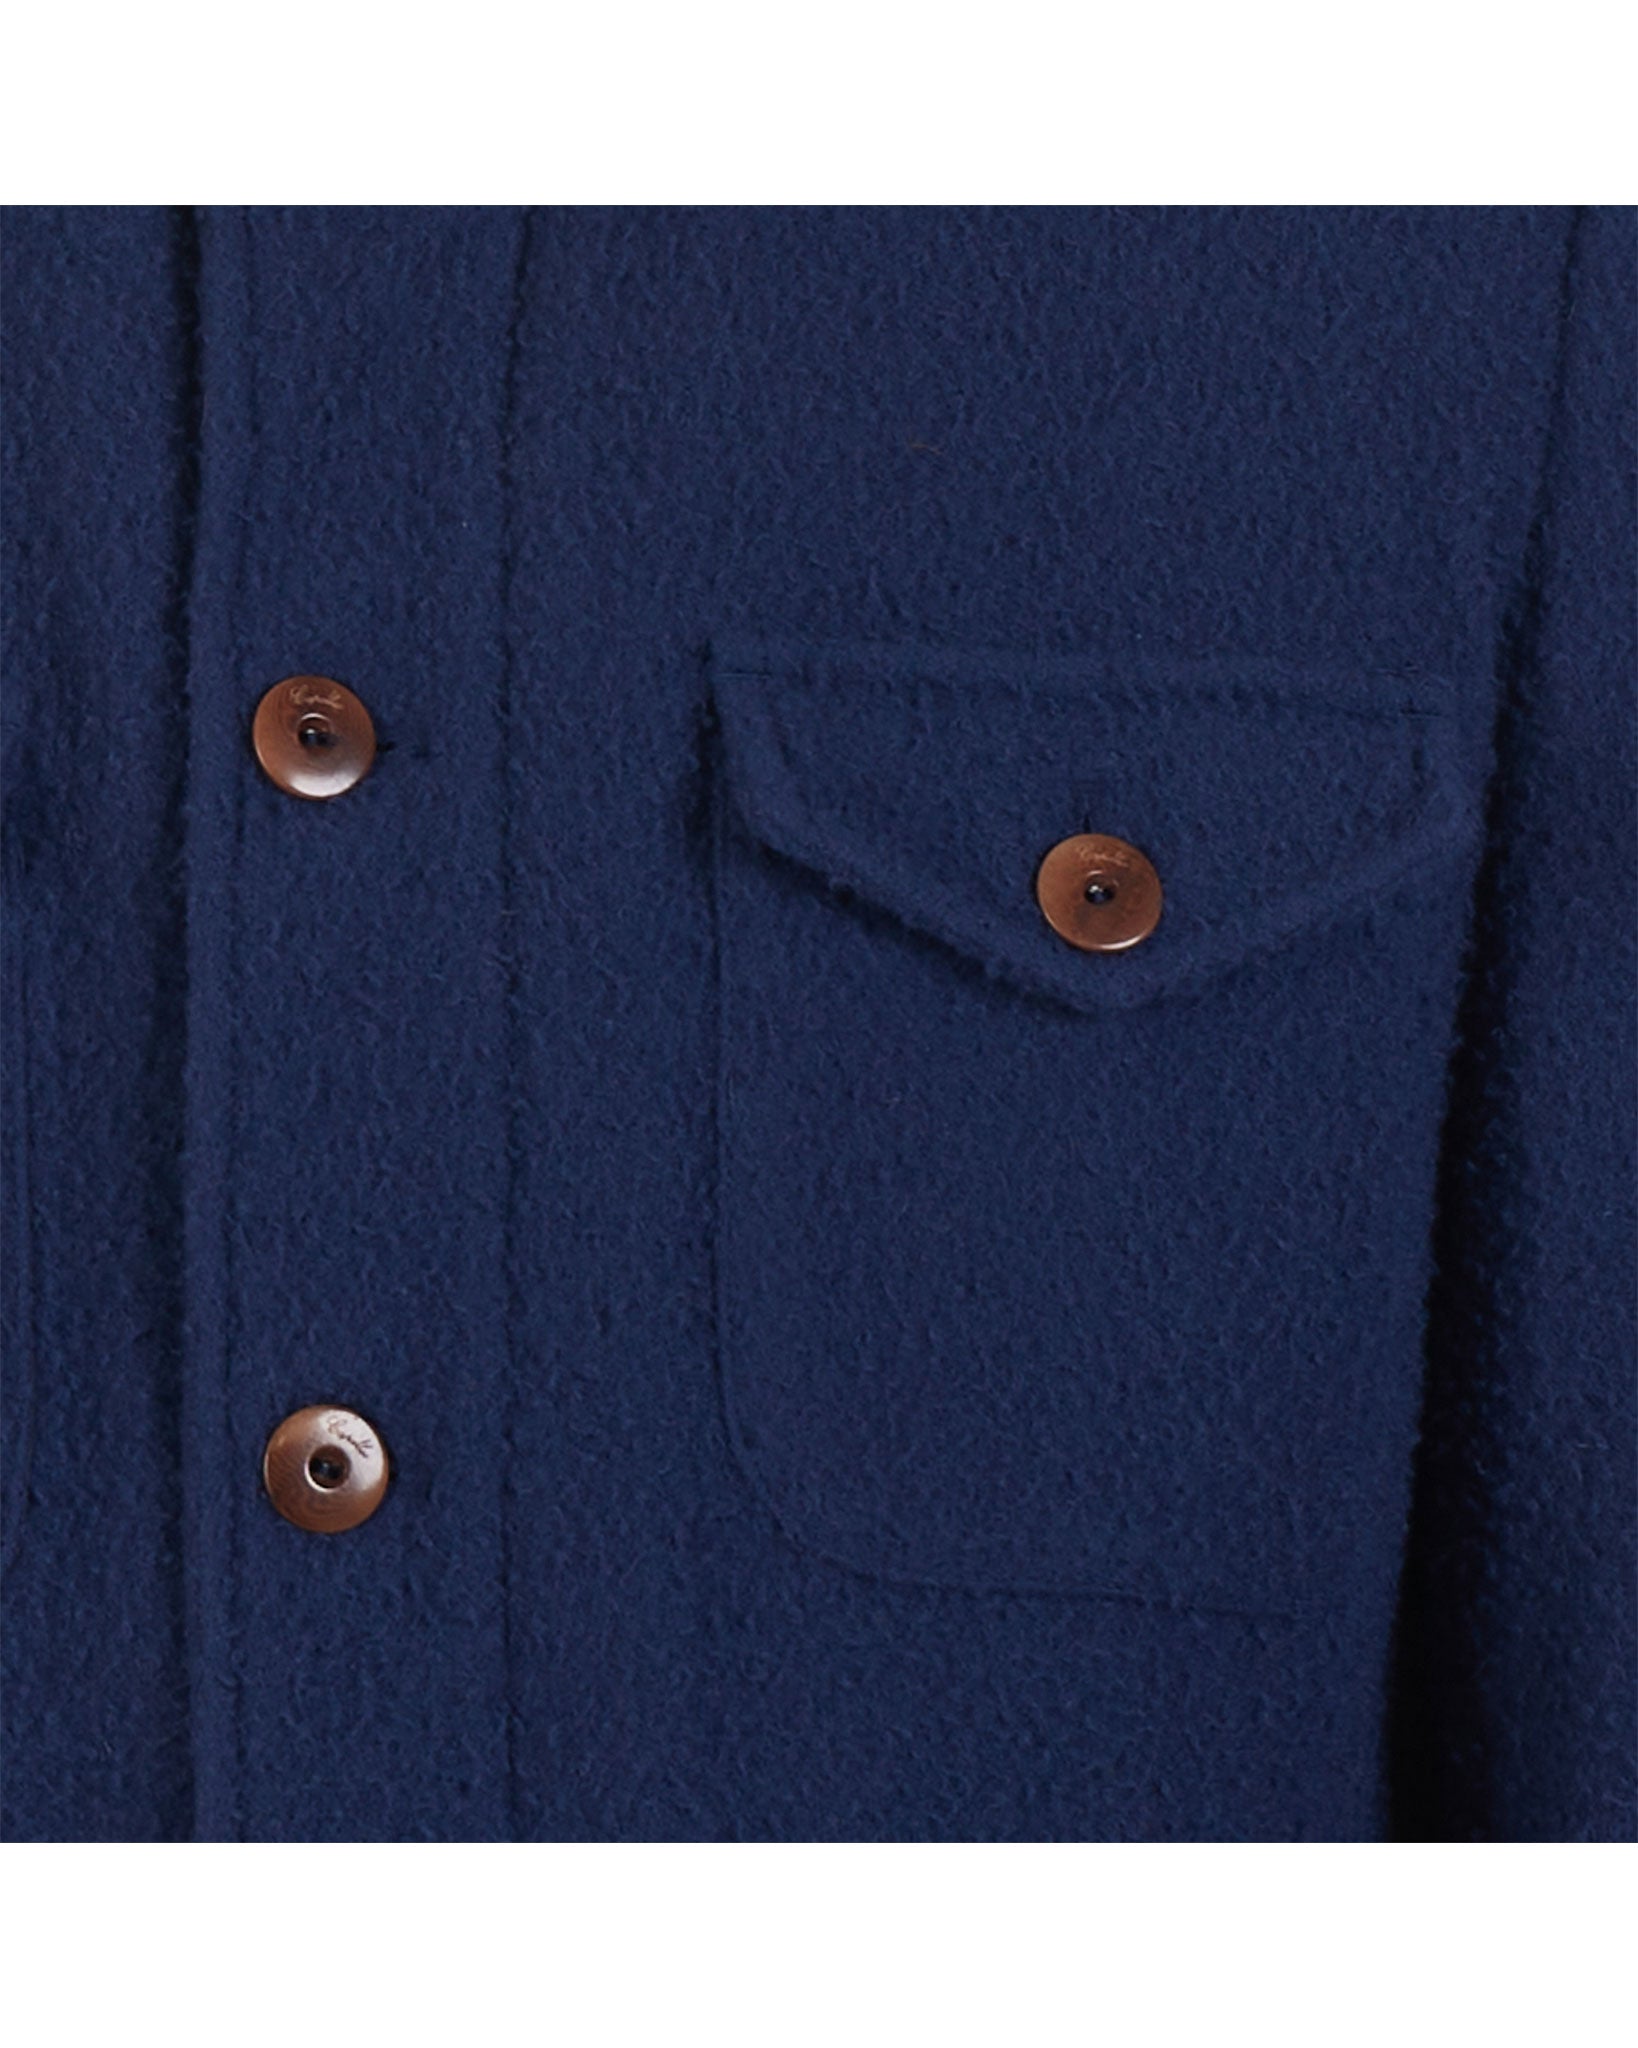 Field Jacket in Casentino wool